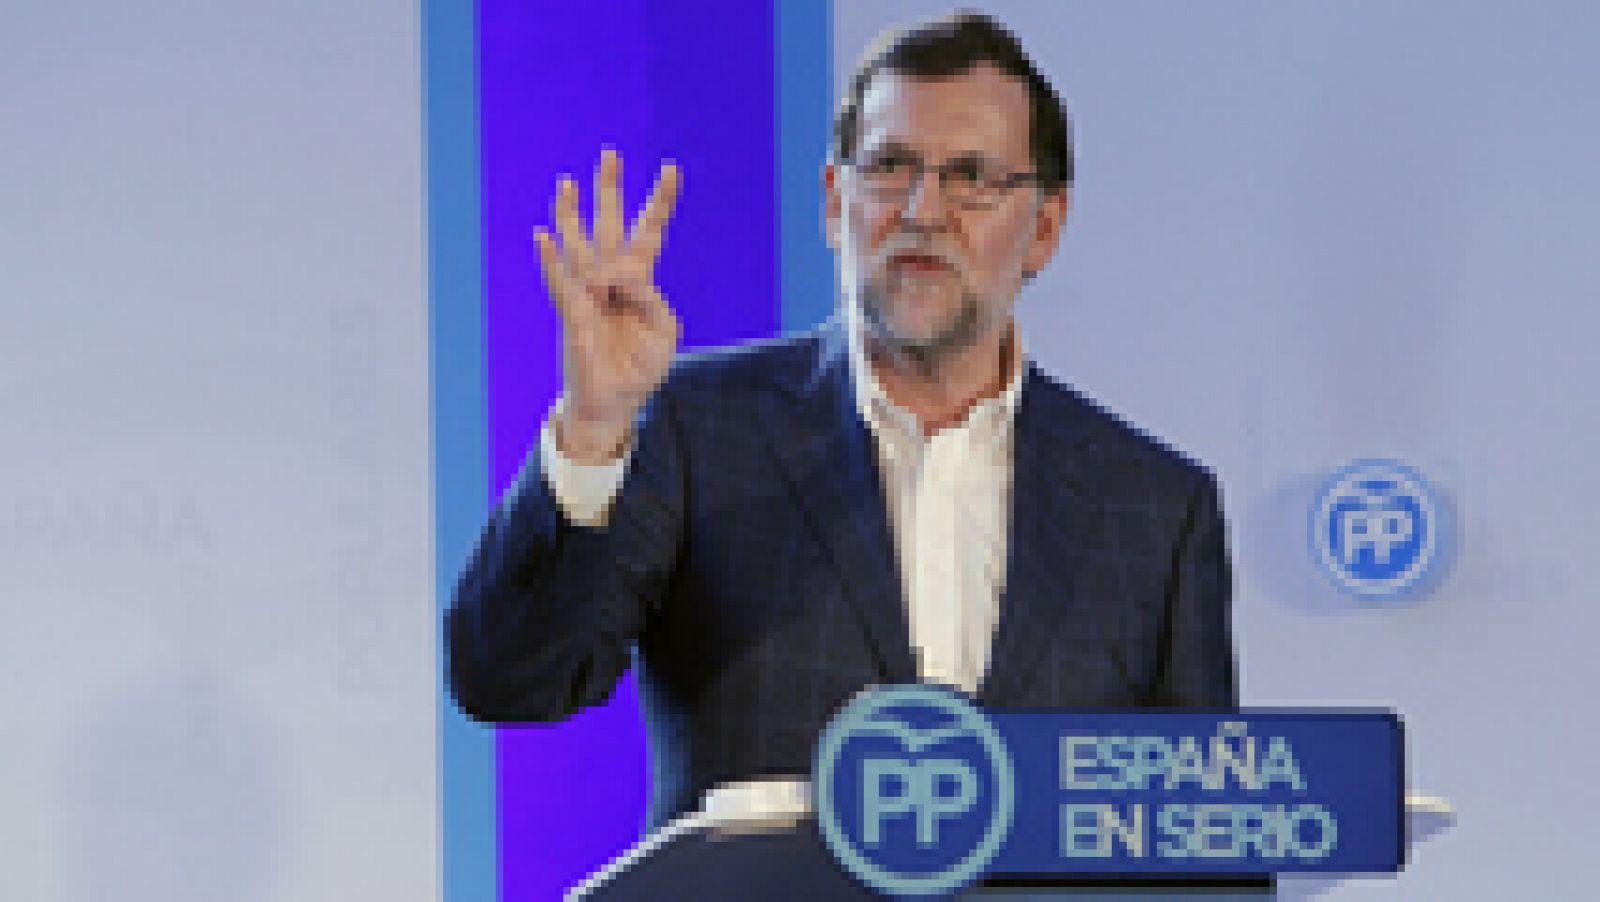 El presidente de Gobierno en funciones, Mariano Rajoy, ha acudido a su primer acto público tras la renuncia del exministro Soria, en Zaragoza, donde ha criticado la postura de Sánchez respecto a las negociaciones de Gobierno y reitera su apuesta por la gran coalición.